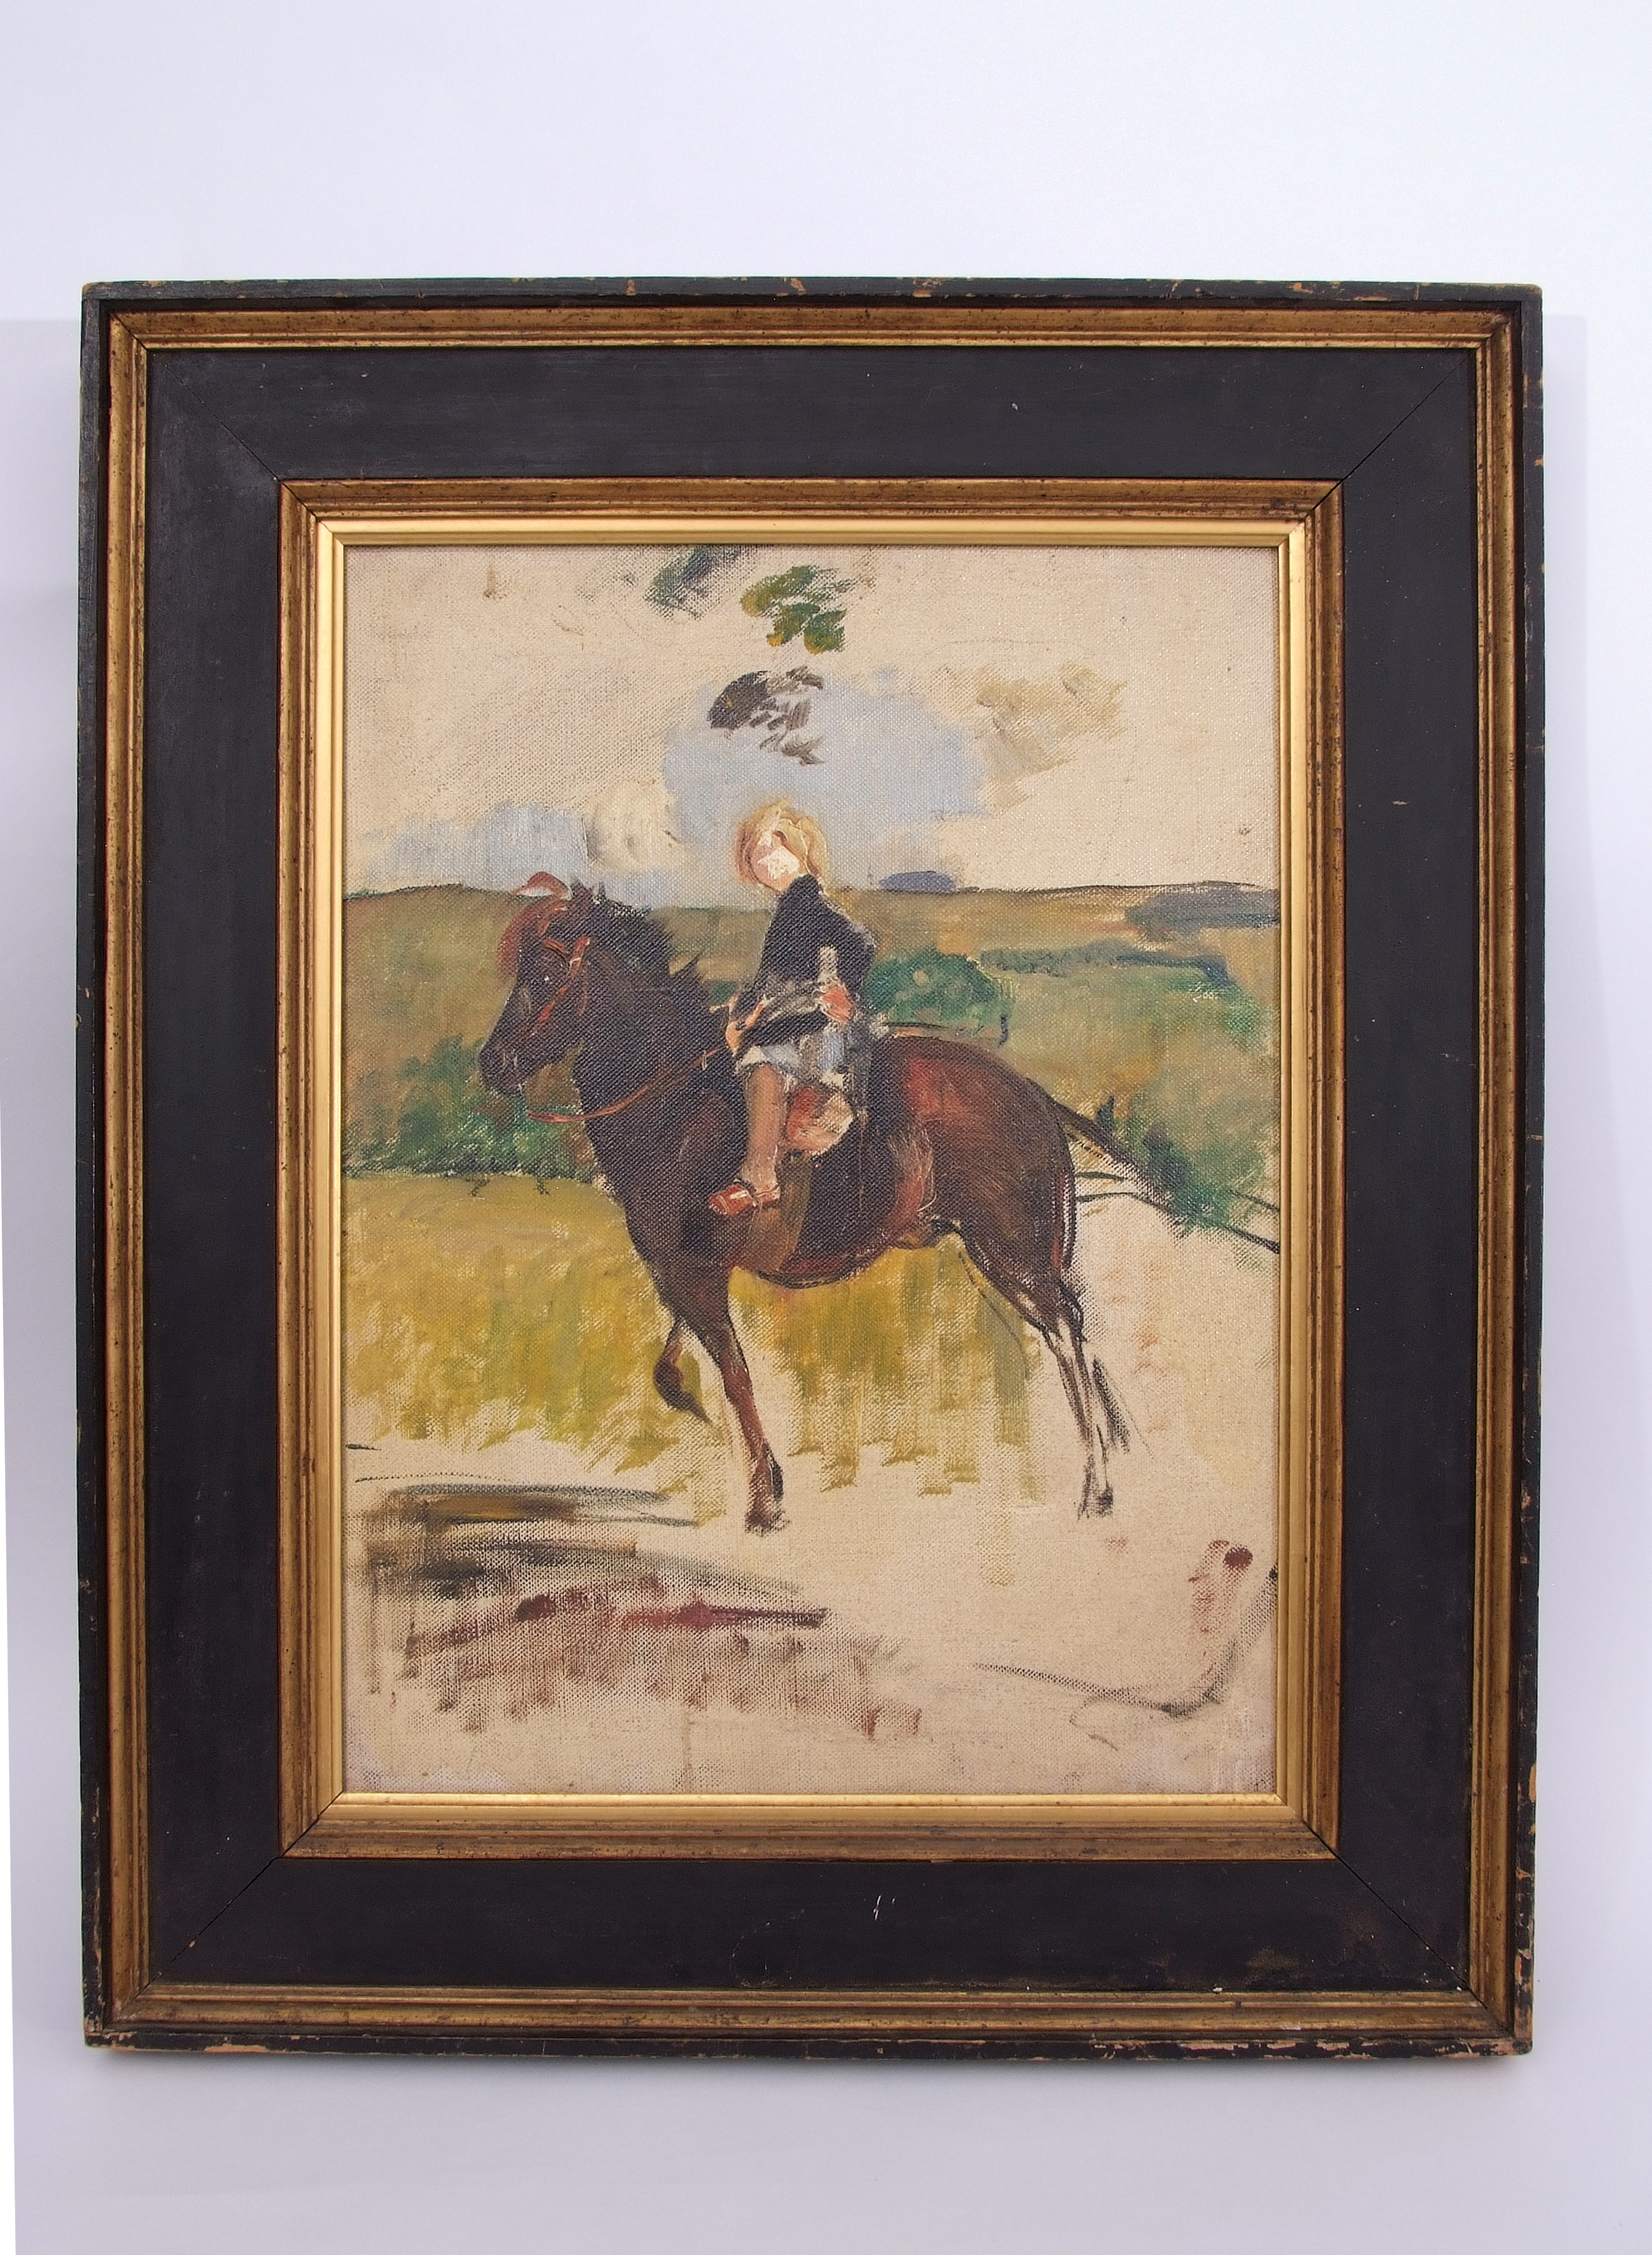 Annie Louisa Swynnerton (1844-1933) Miss Elizabeth Williamson on a Pony oil on canvas, 53 x 39cm